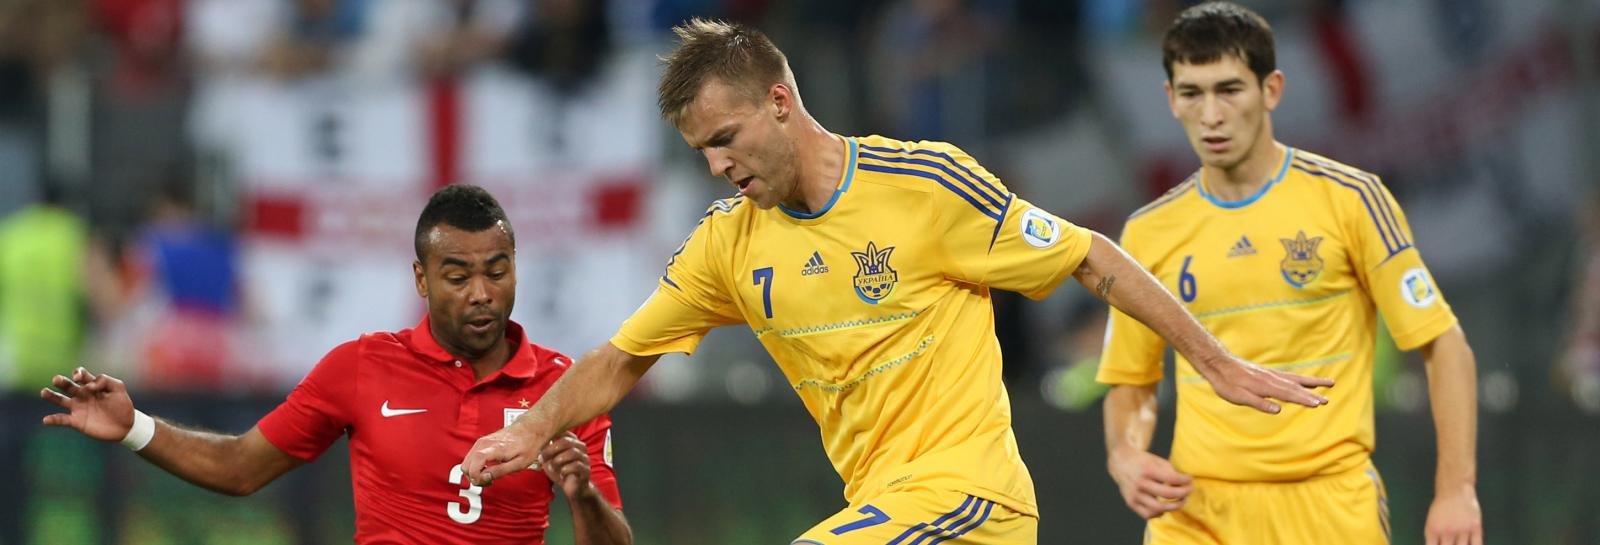 Everton preparing £21m offer for Ukraine’s star forward